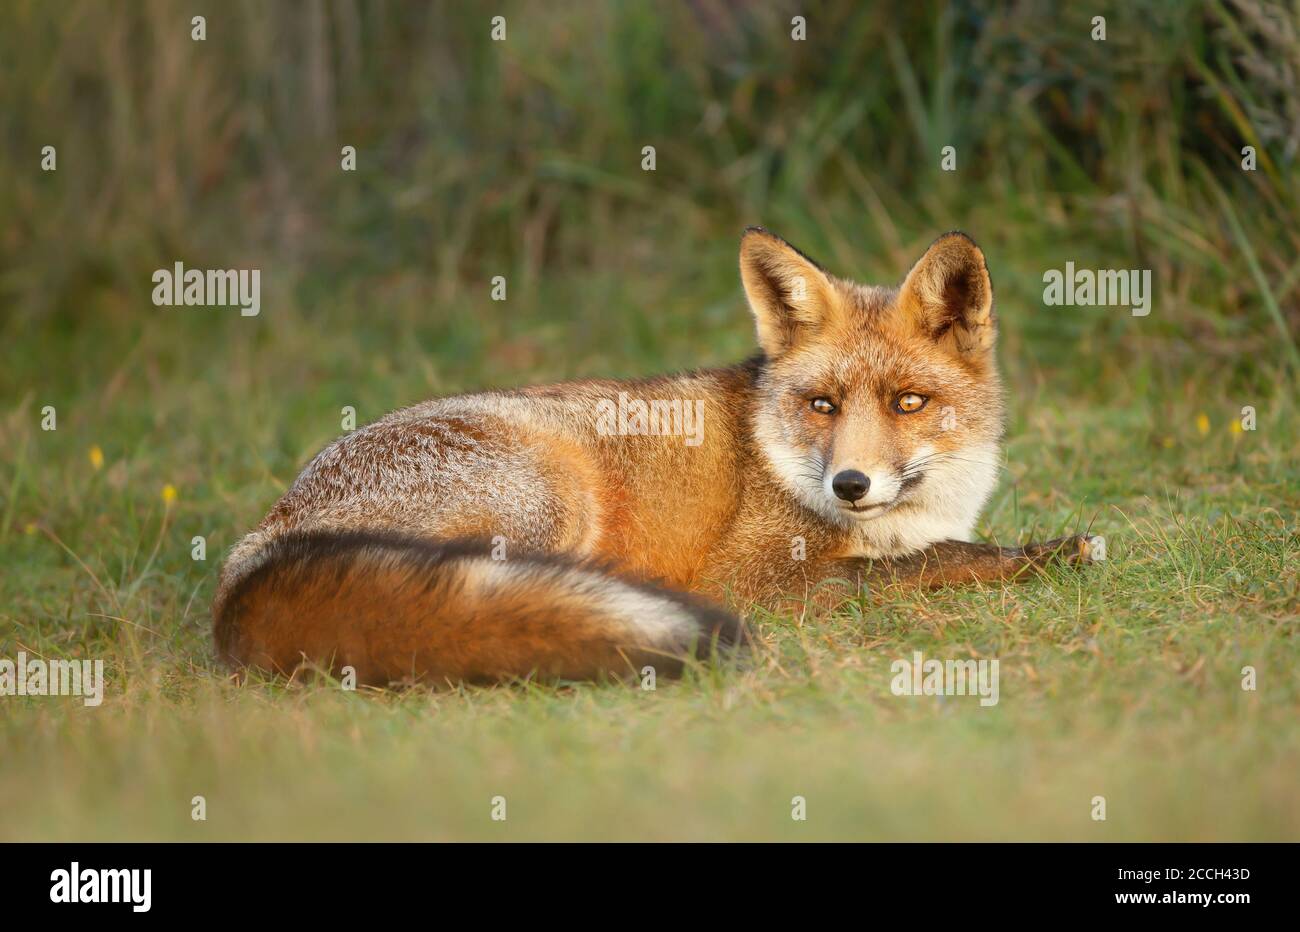 Primo piano di una volpe rossa (Vulpes vulpes) che giace sull'erba durante il giorno, Regno Unito. Foto Stock